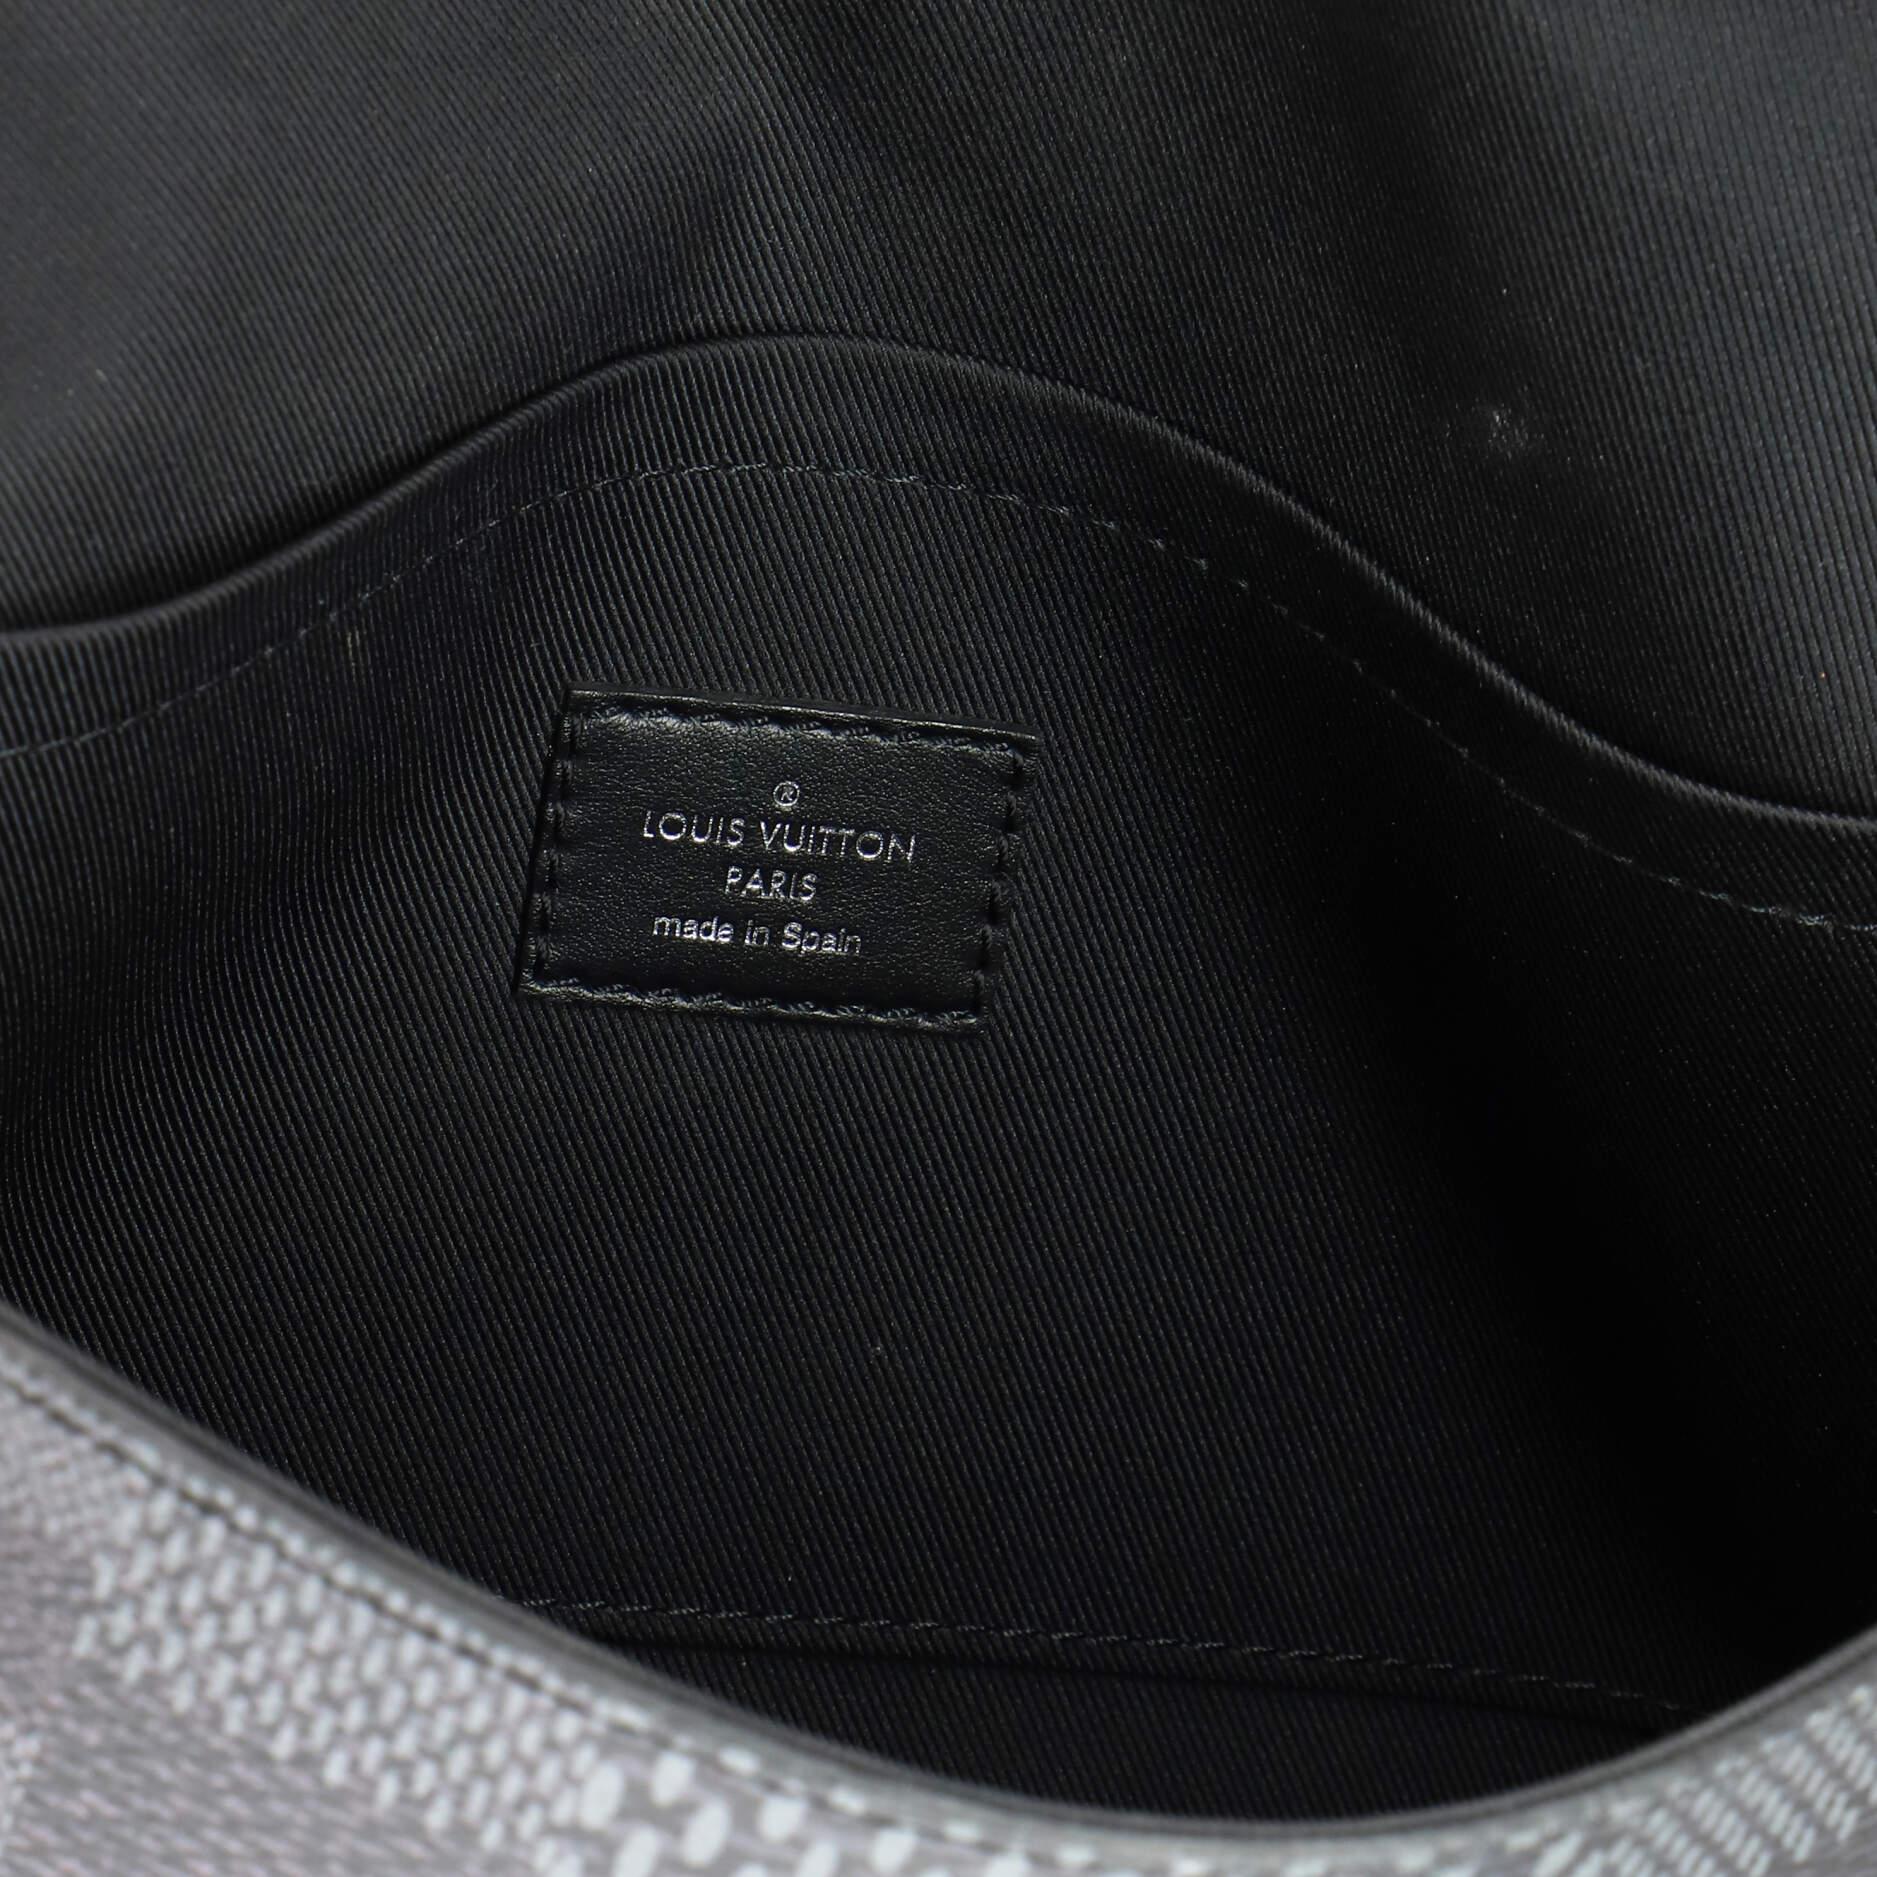 Louis Vuitton Studio Messenger Bag Limited Edition Damier Graphite 3D For Sale 2